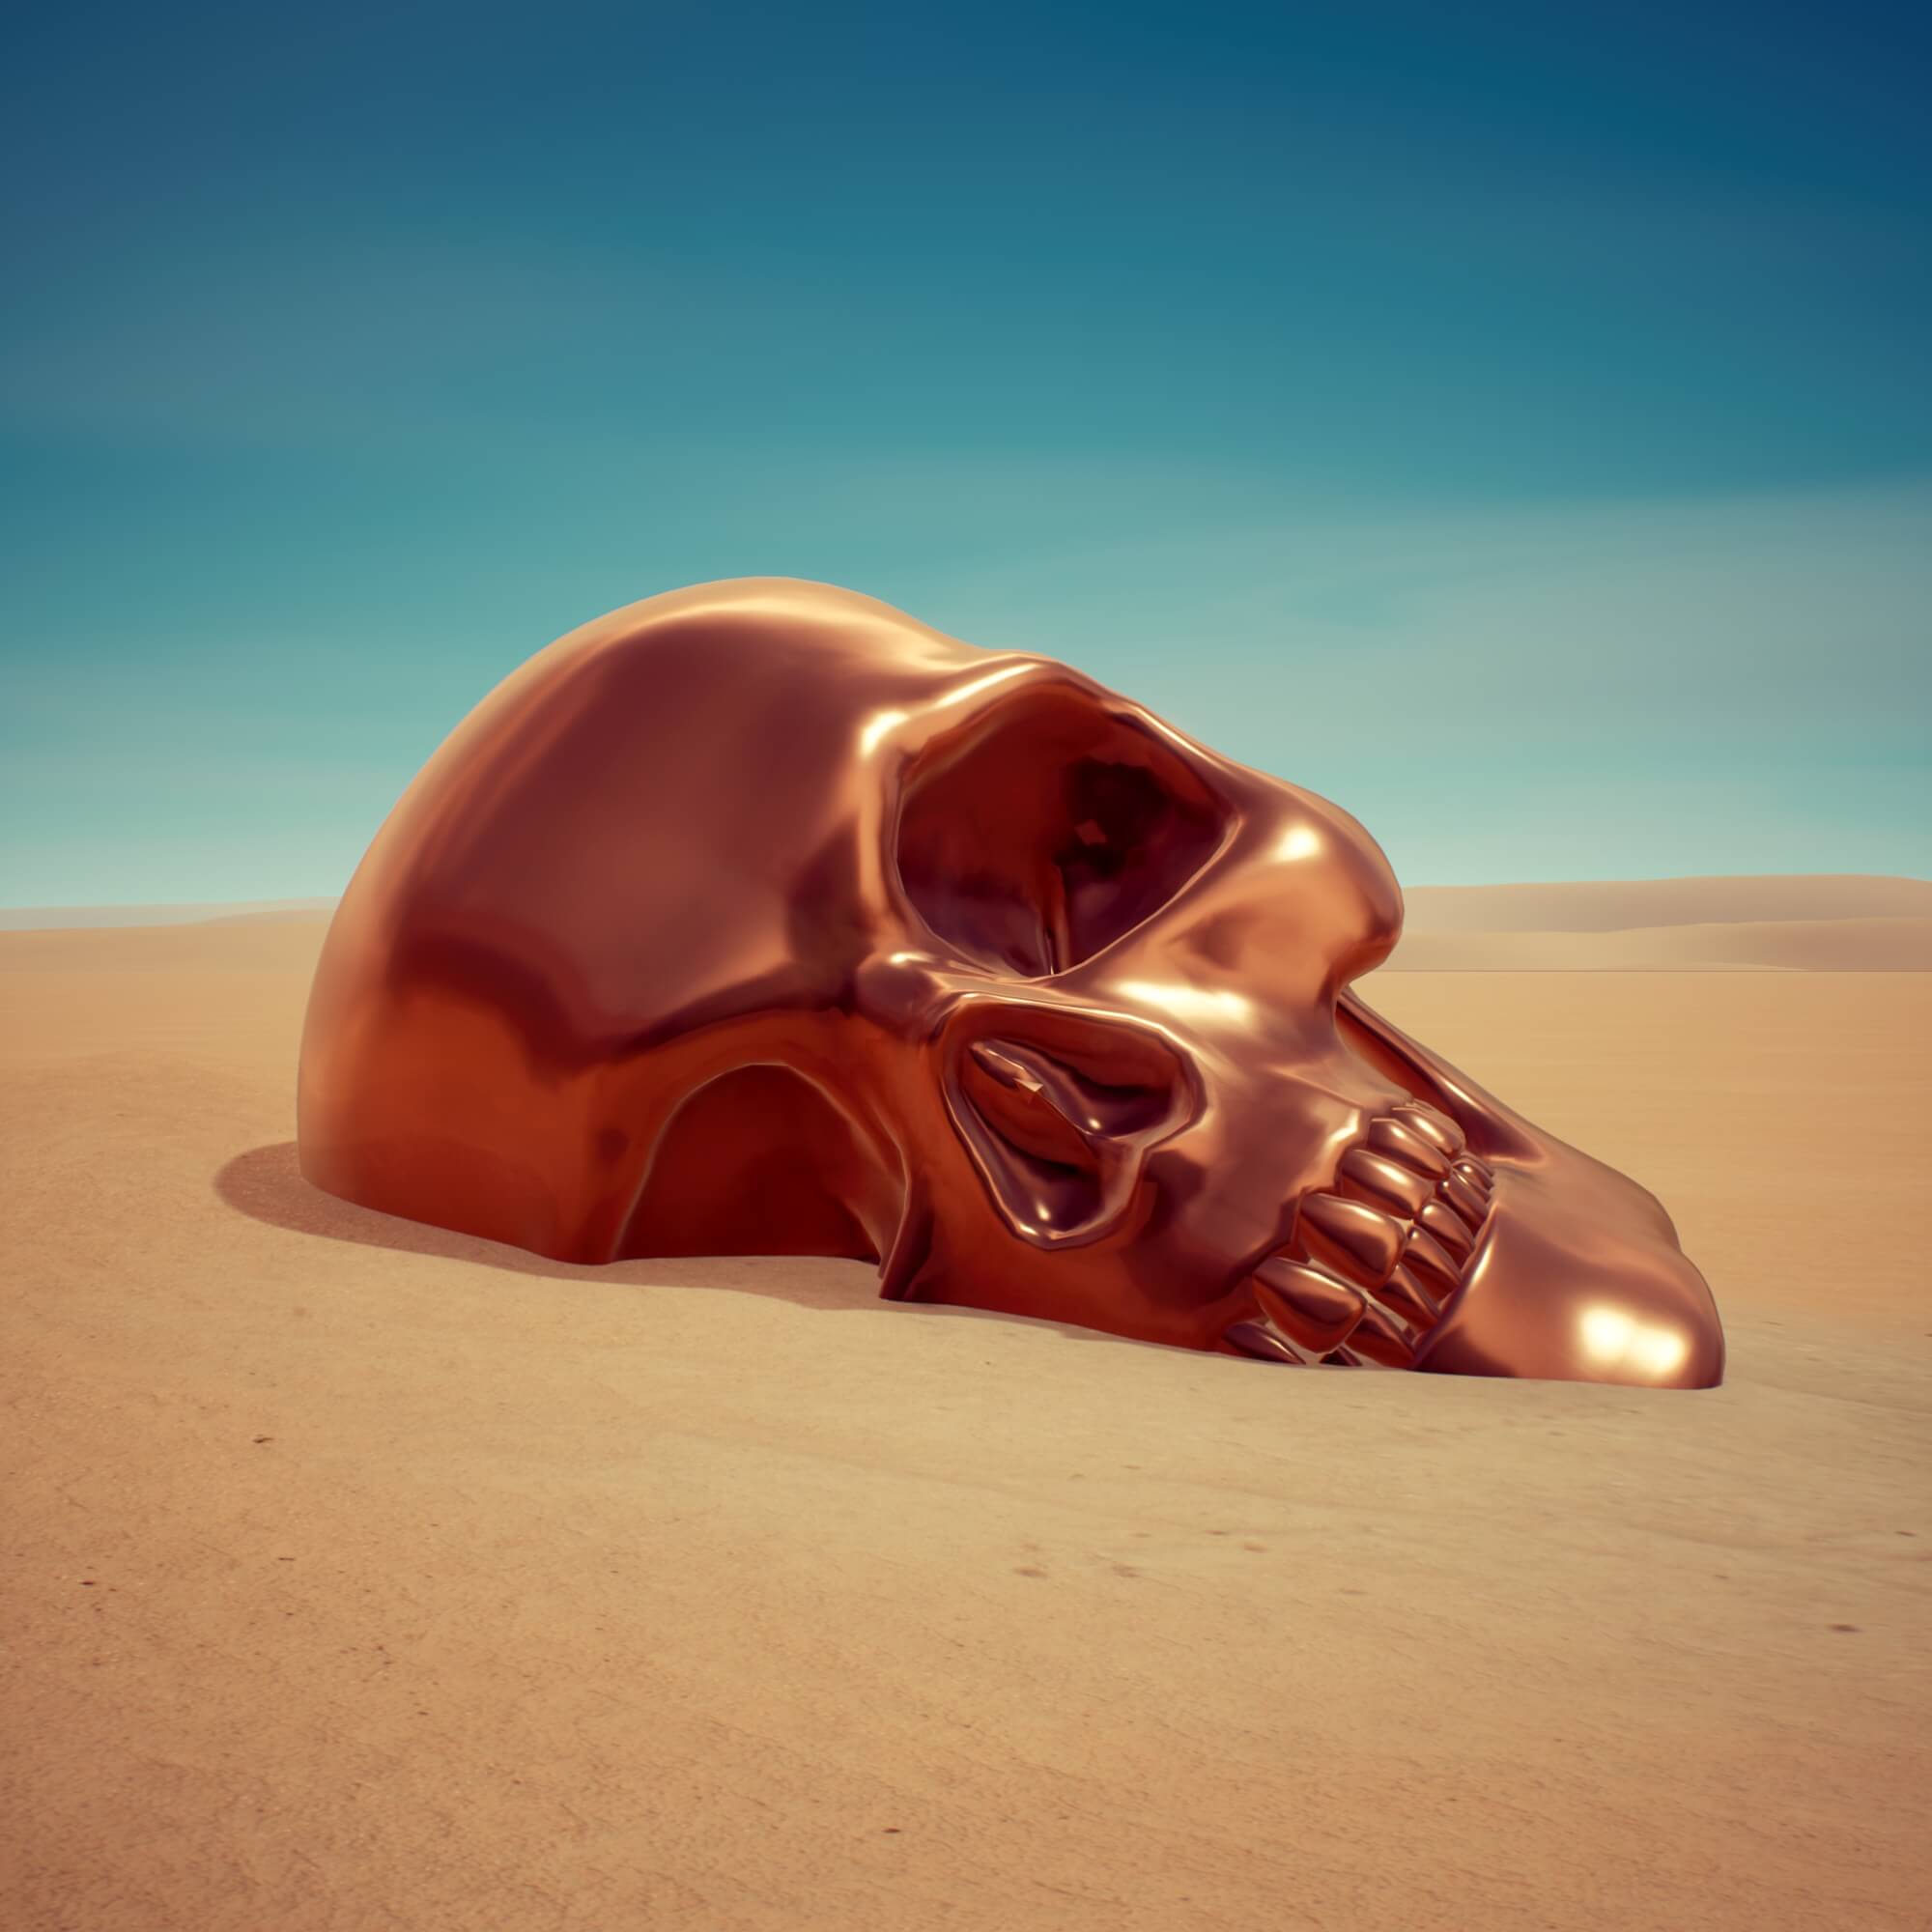 Sandskull bronze